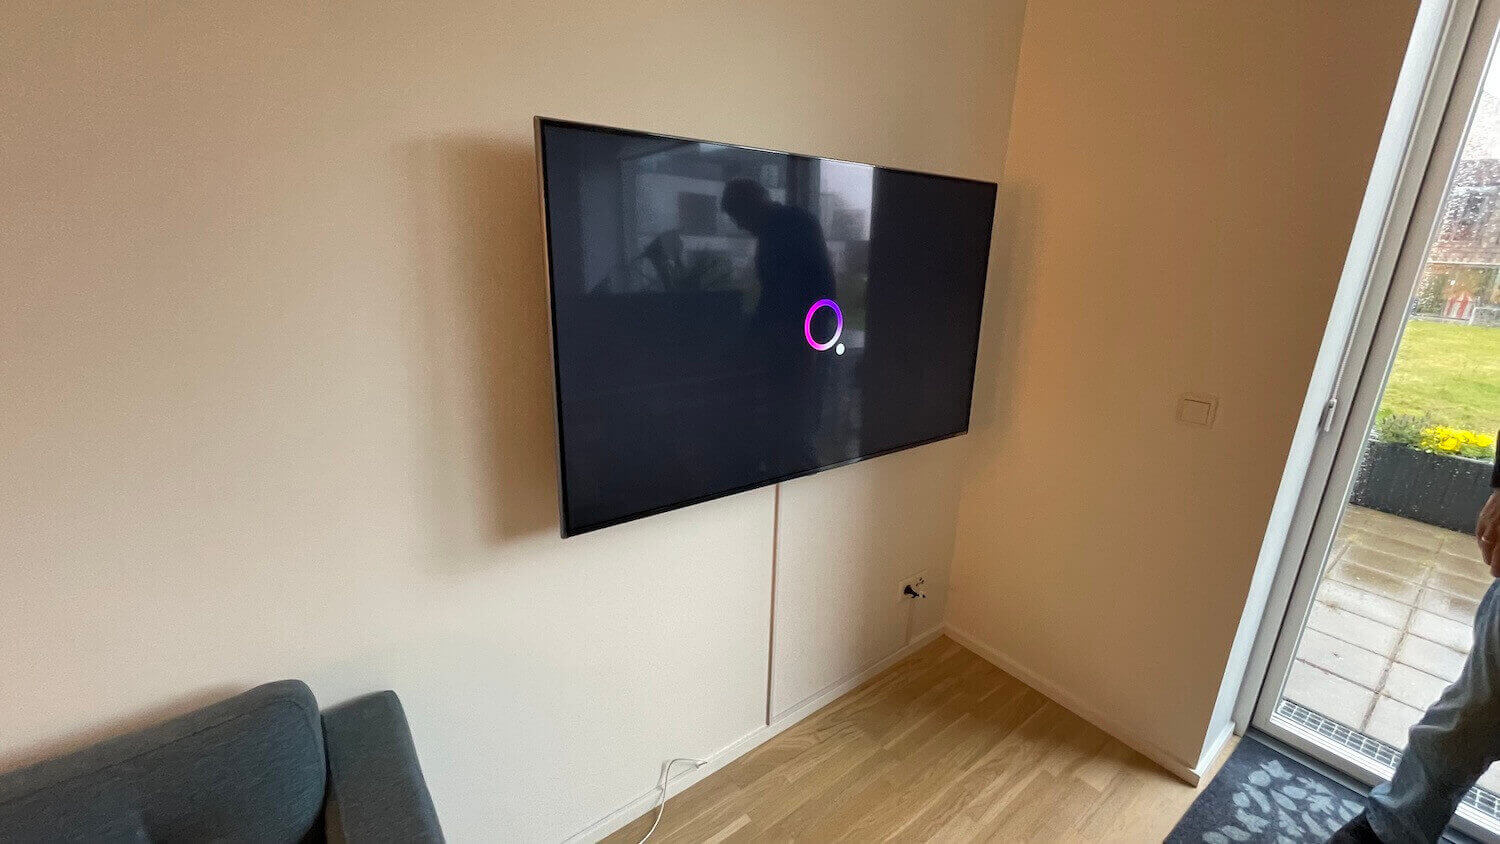 Væg-installation af LG NanoCell TV